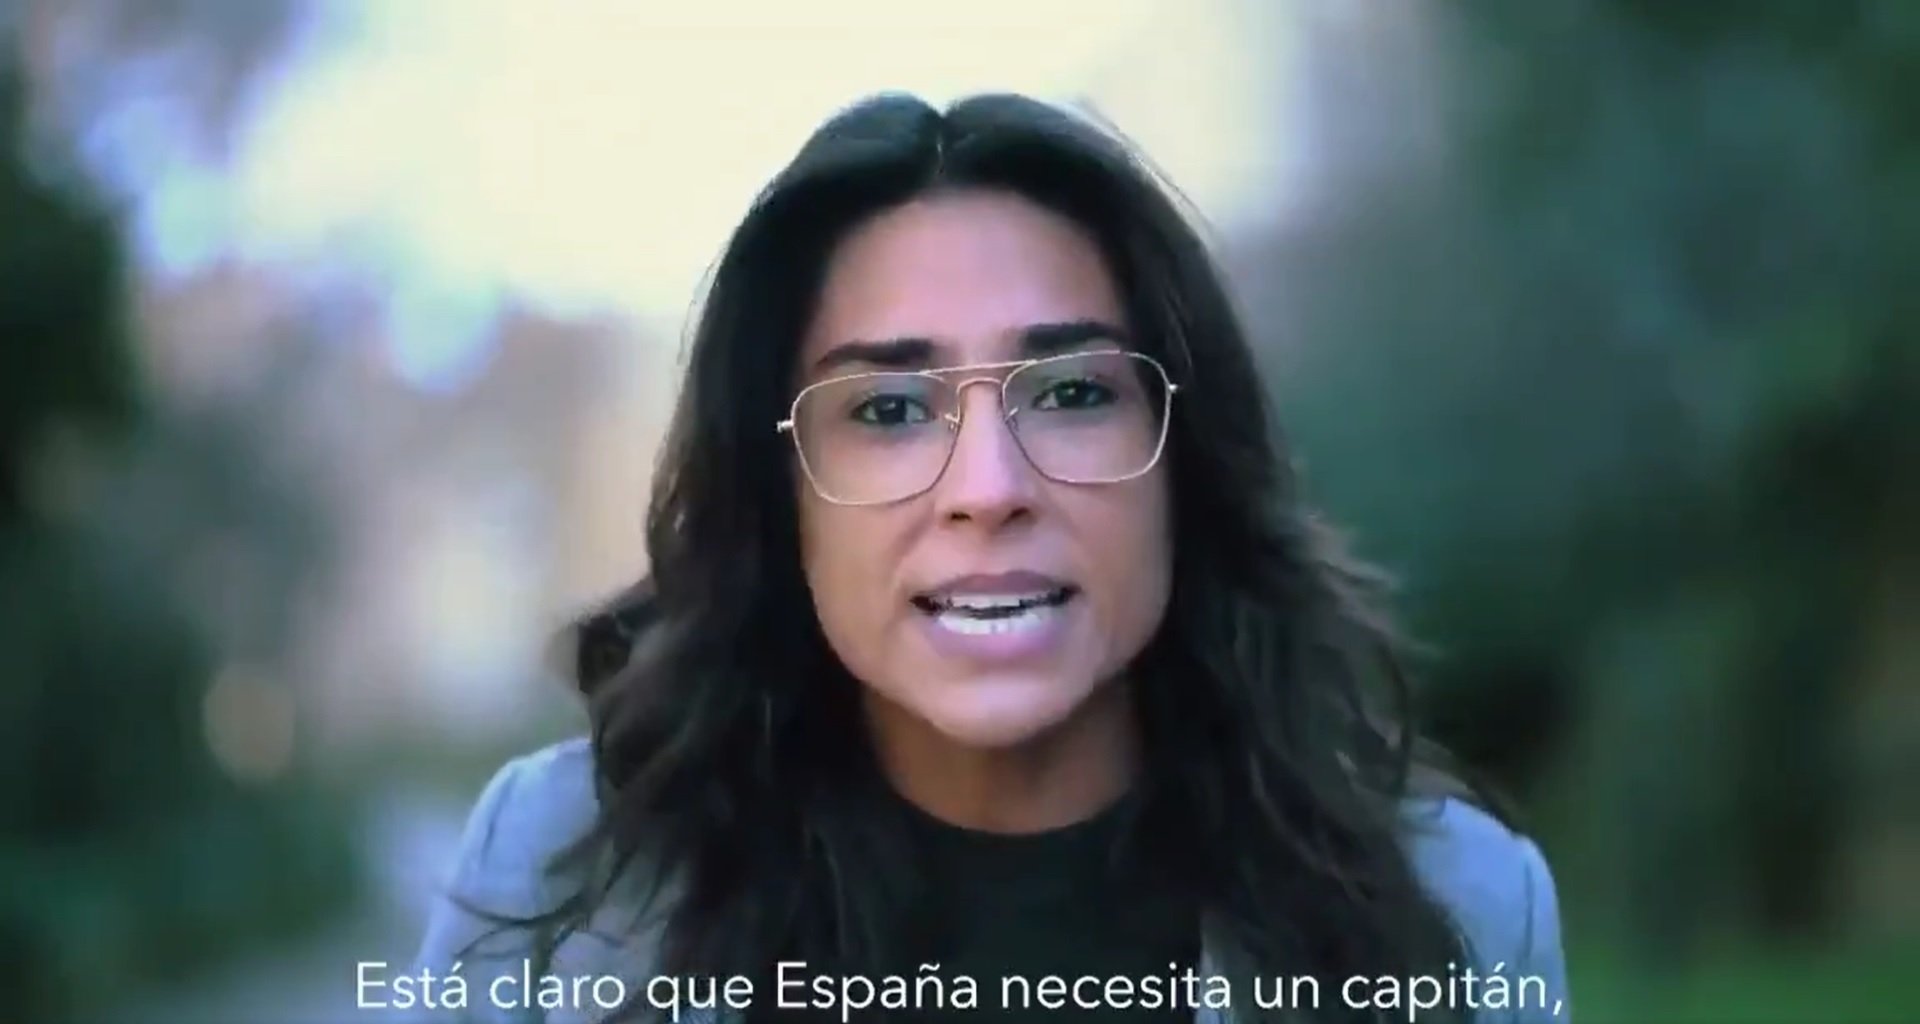 El mensaje fascista escondido tras un vídeo viral: "España necesita un capitán"